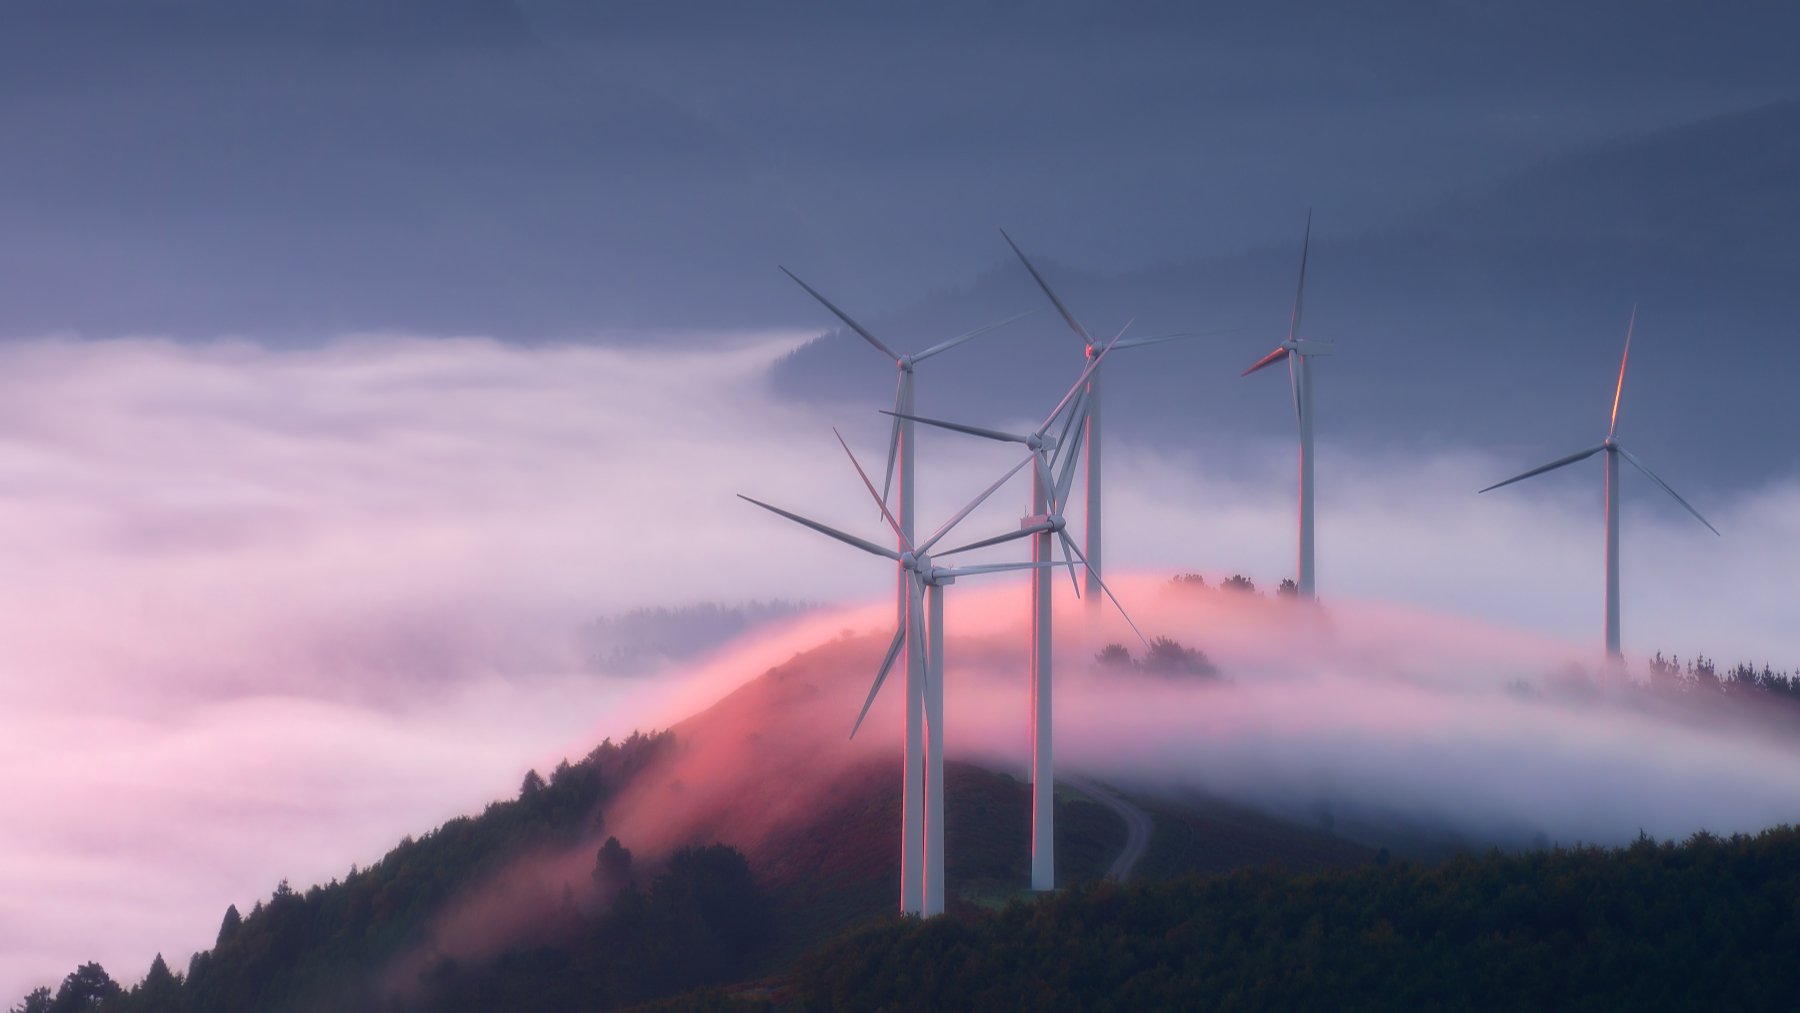 Estados Unidos, China y Alemania mantienen las tres primeras posiciones en el índice RECAI gracias a la demanda sostenida de energías renovables